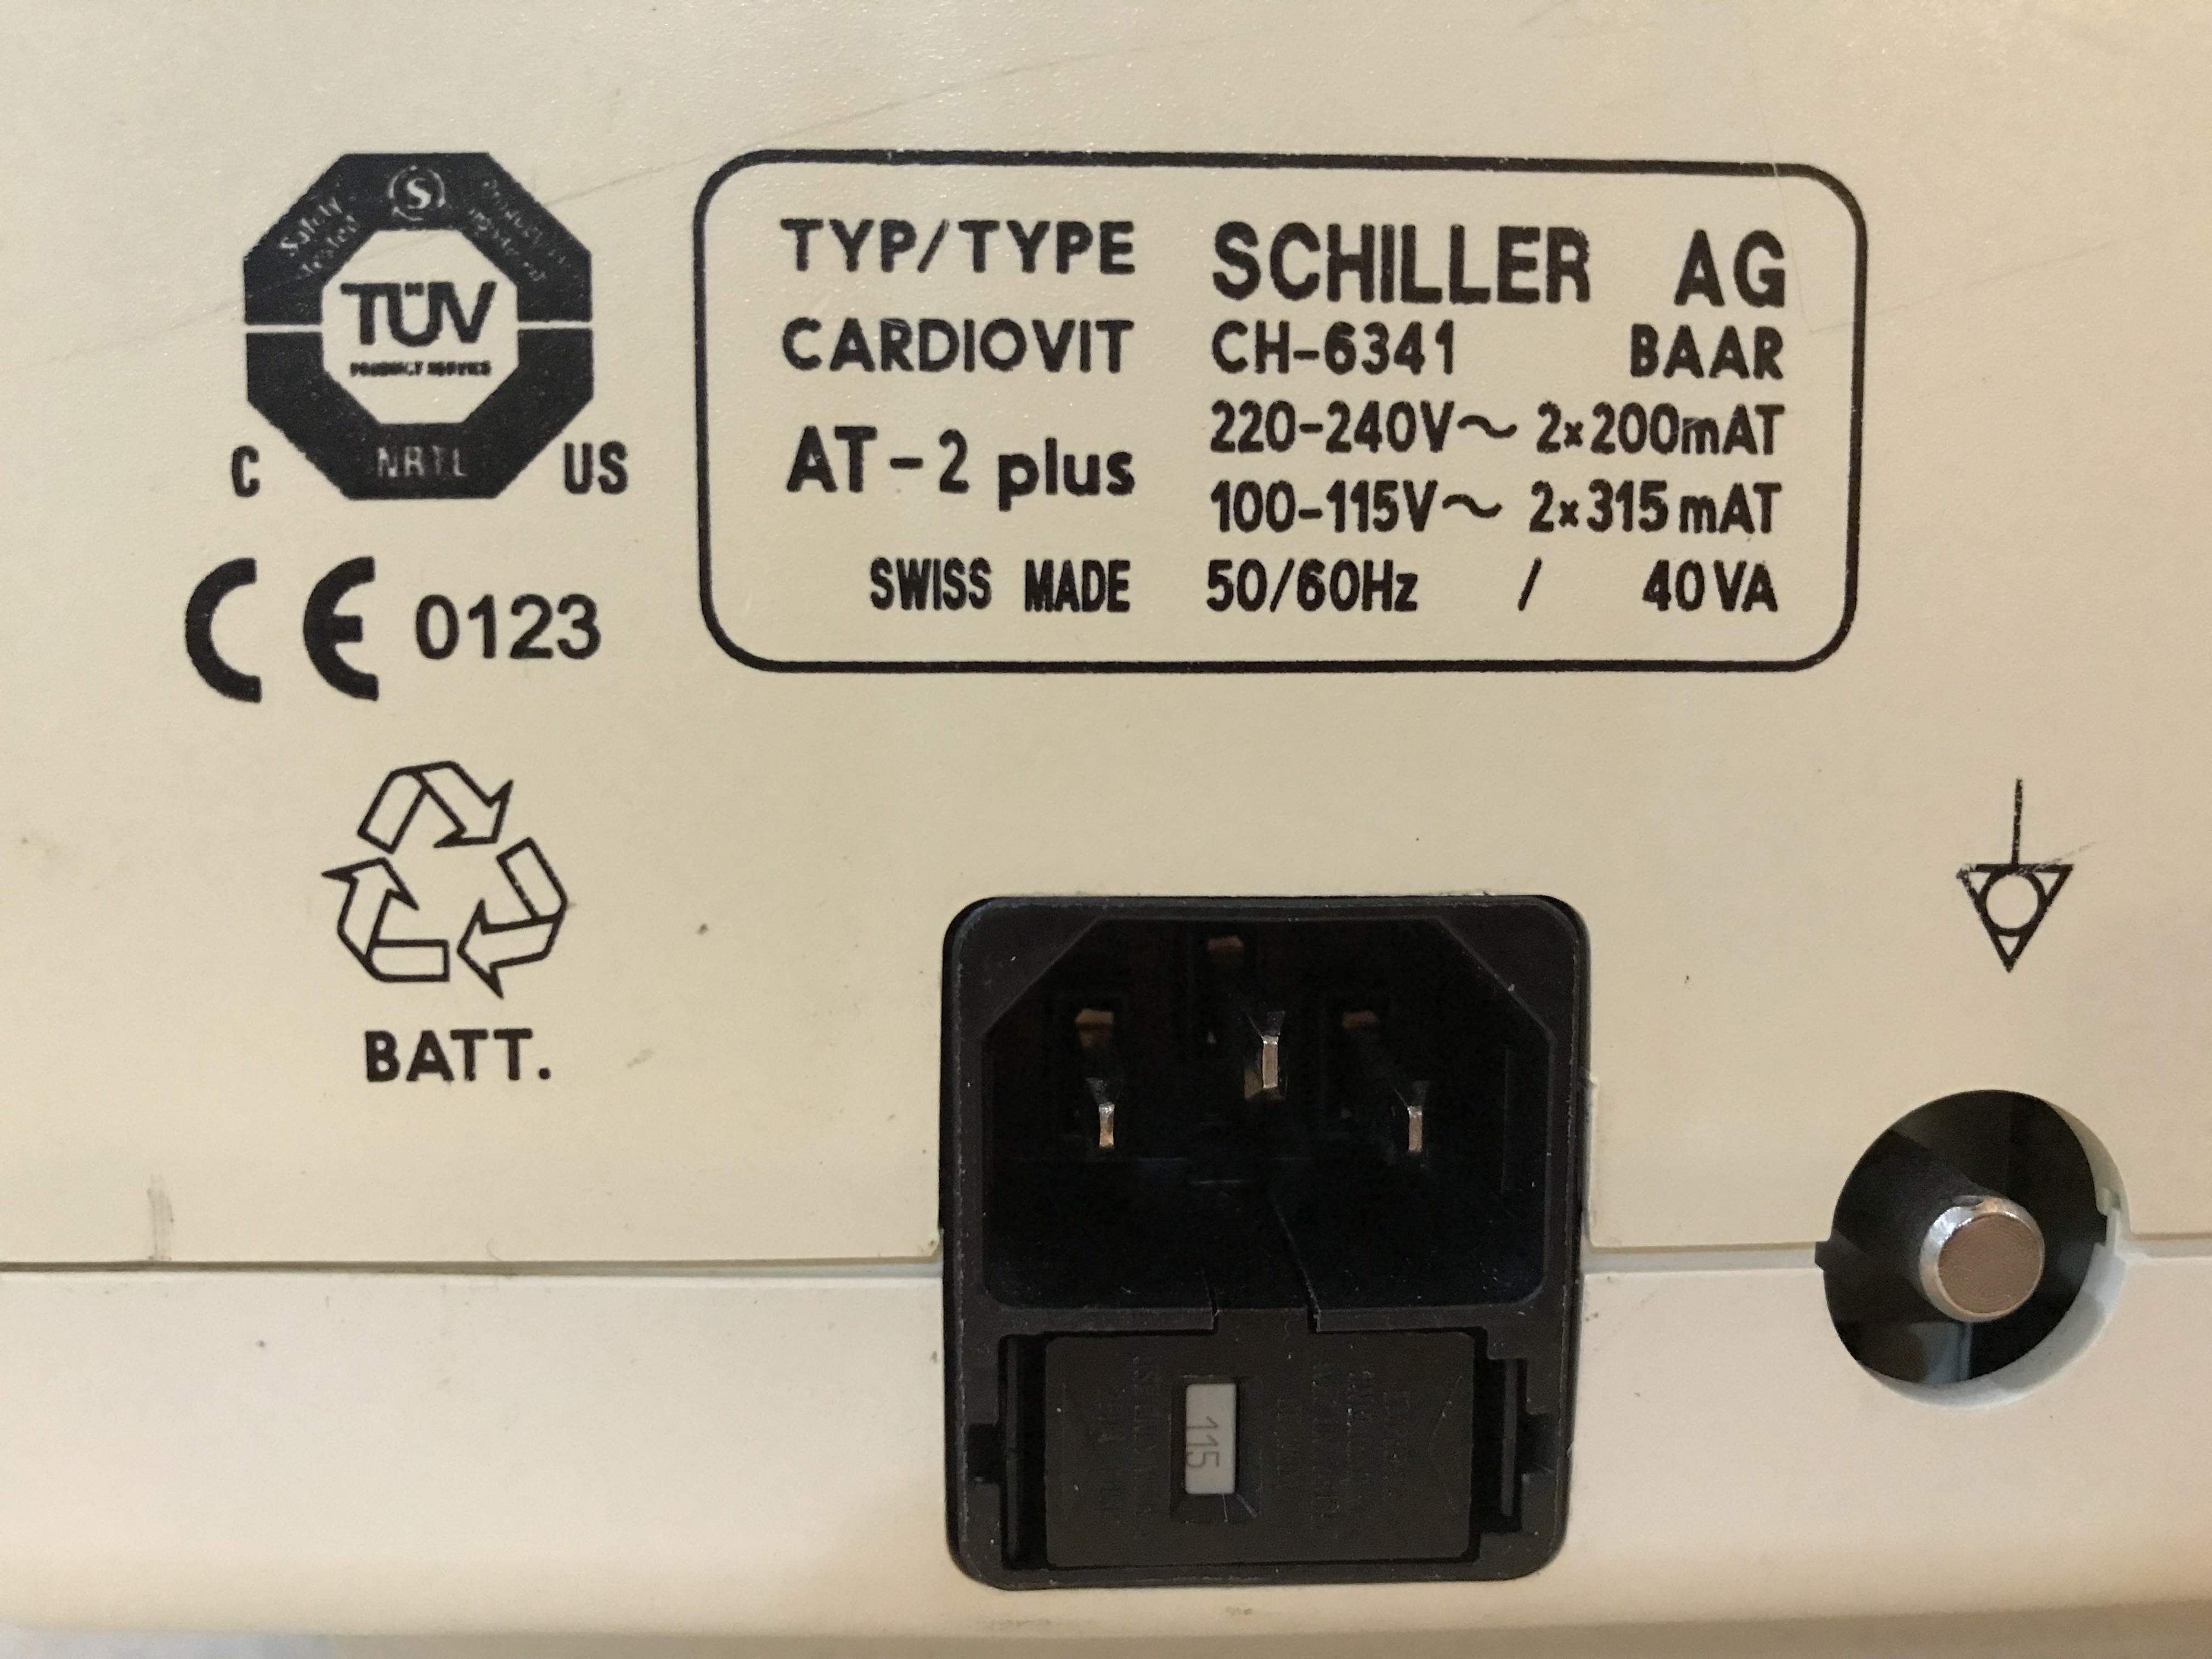 SCHILLER CARDIOVIT AT-2 PLUS EKG